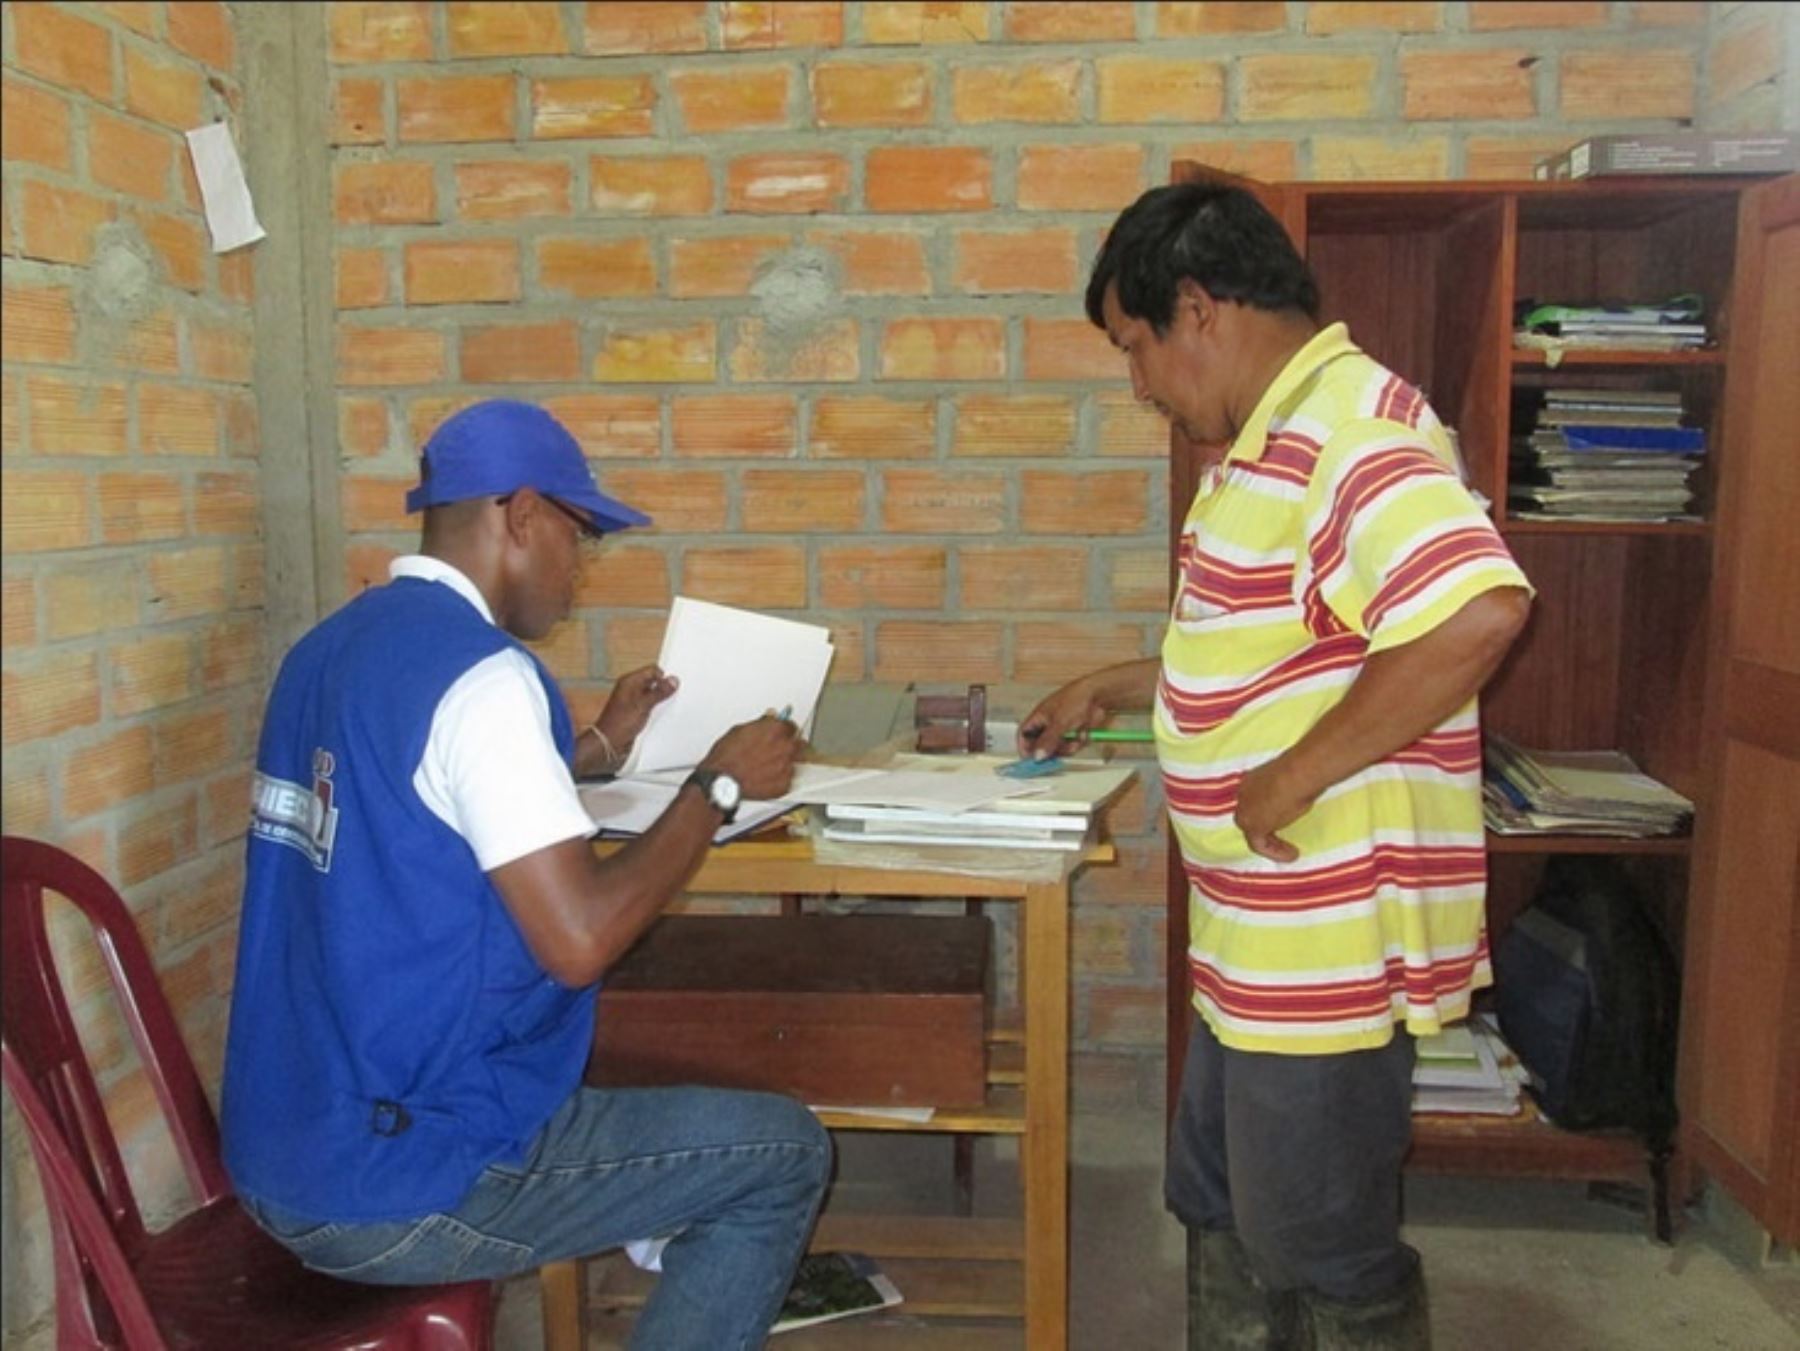 El Registro Nacional de Identificación y Estado Civil (Reniec) amplió desde hoy el servicio de Registro Civil Bilingüe para los peruanos cuya lengua originaria es el wampis, lo que beneficiará a más de 10,000 personas en los departamentos de Amazonas y Loreto.